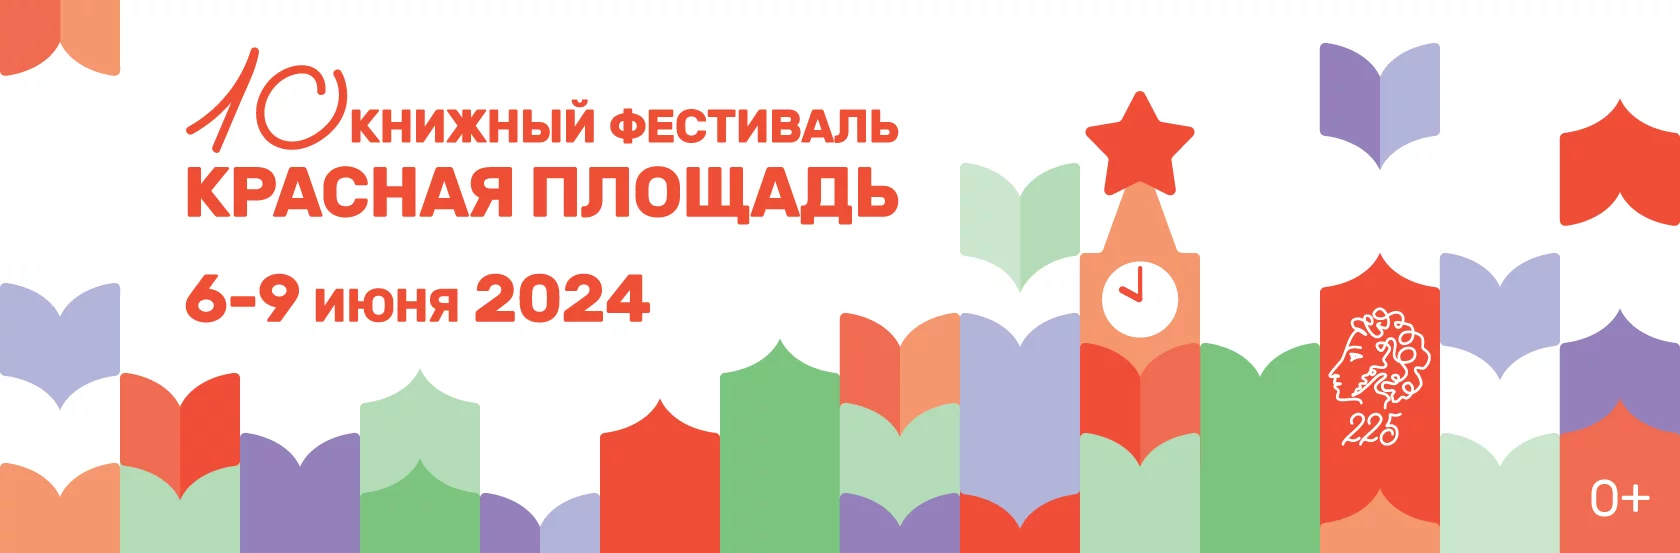 В Москве пройдет X Книжный фестиваль «Красная площадь»